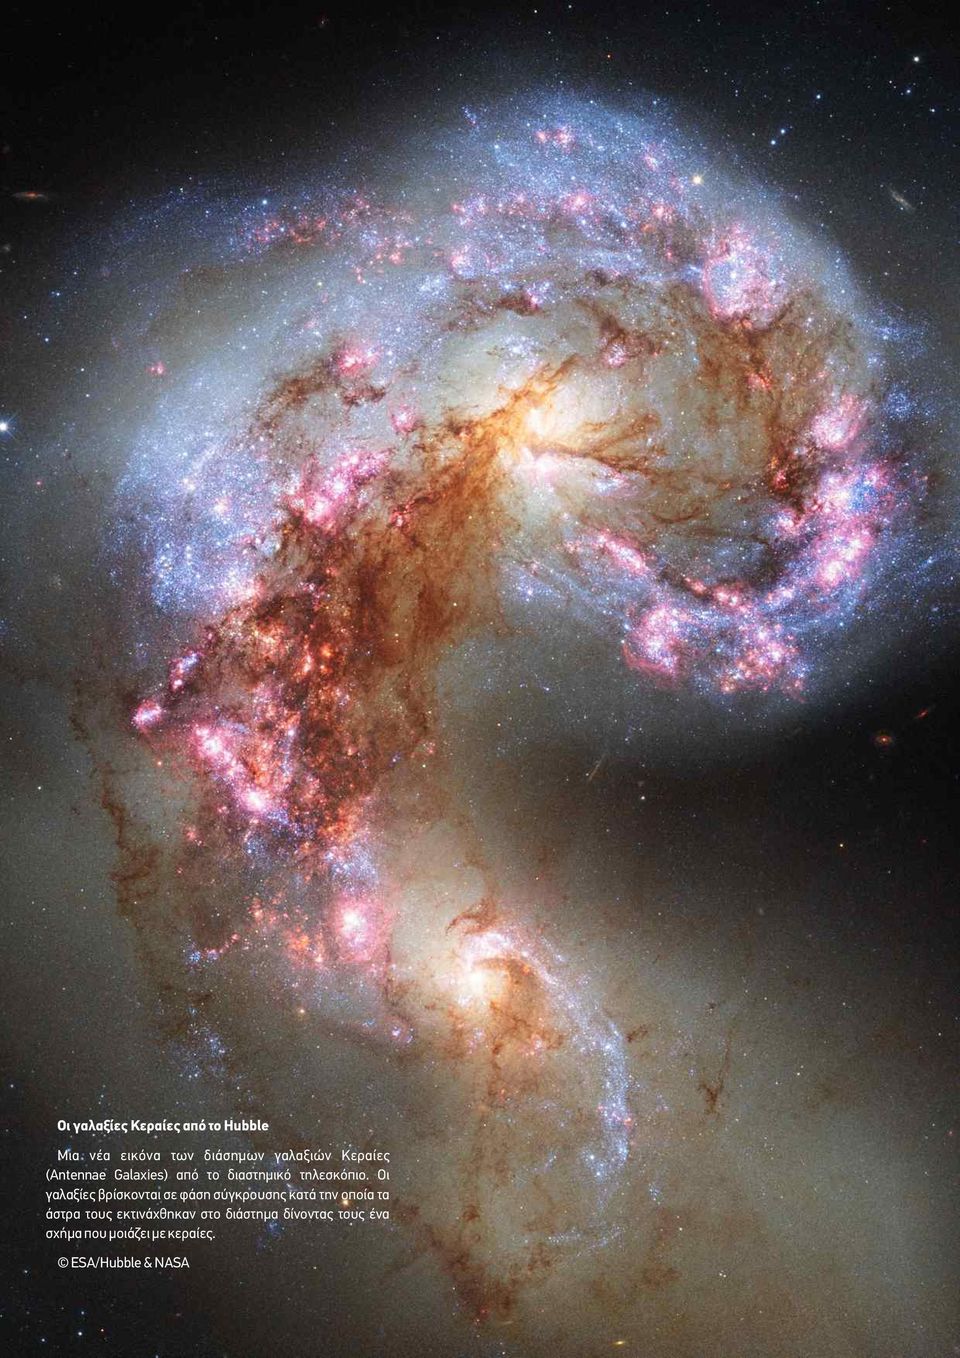 Οι γαλαξίες βρίσκονται σε φάση σύγκρουσης κατά την οποία τα άστρα τους